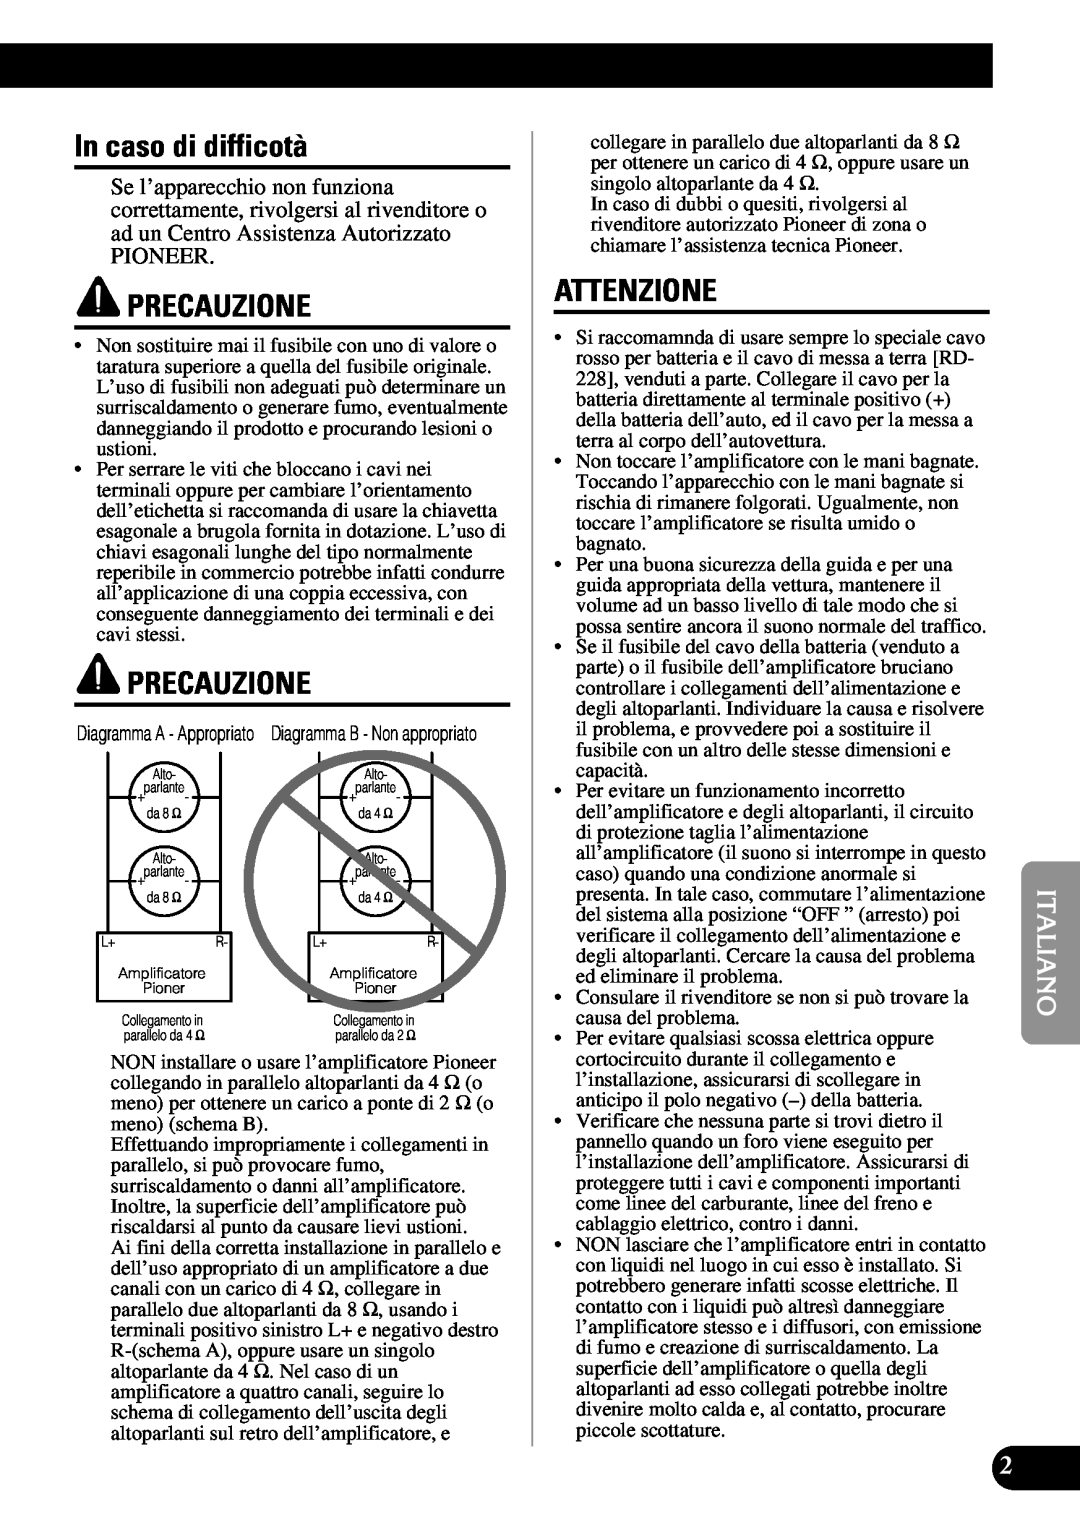 Pioneer PRS-A900 owner manual In caso di difficotà, Precauzione, Attenzione, Pioneer 